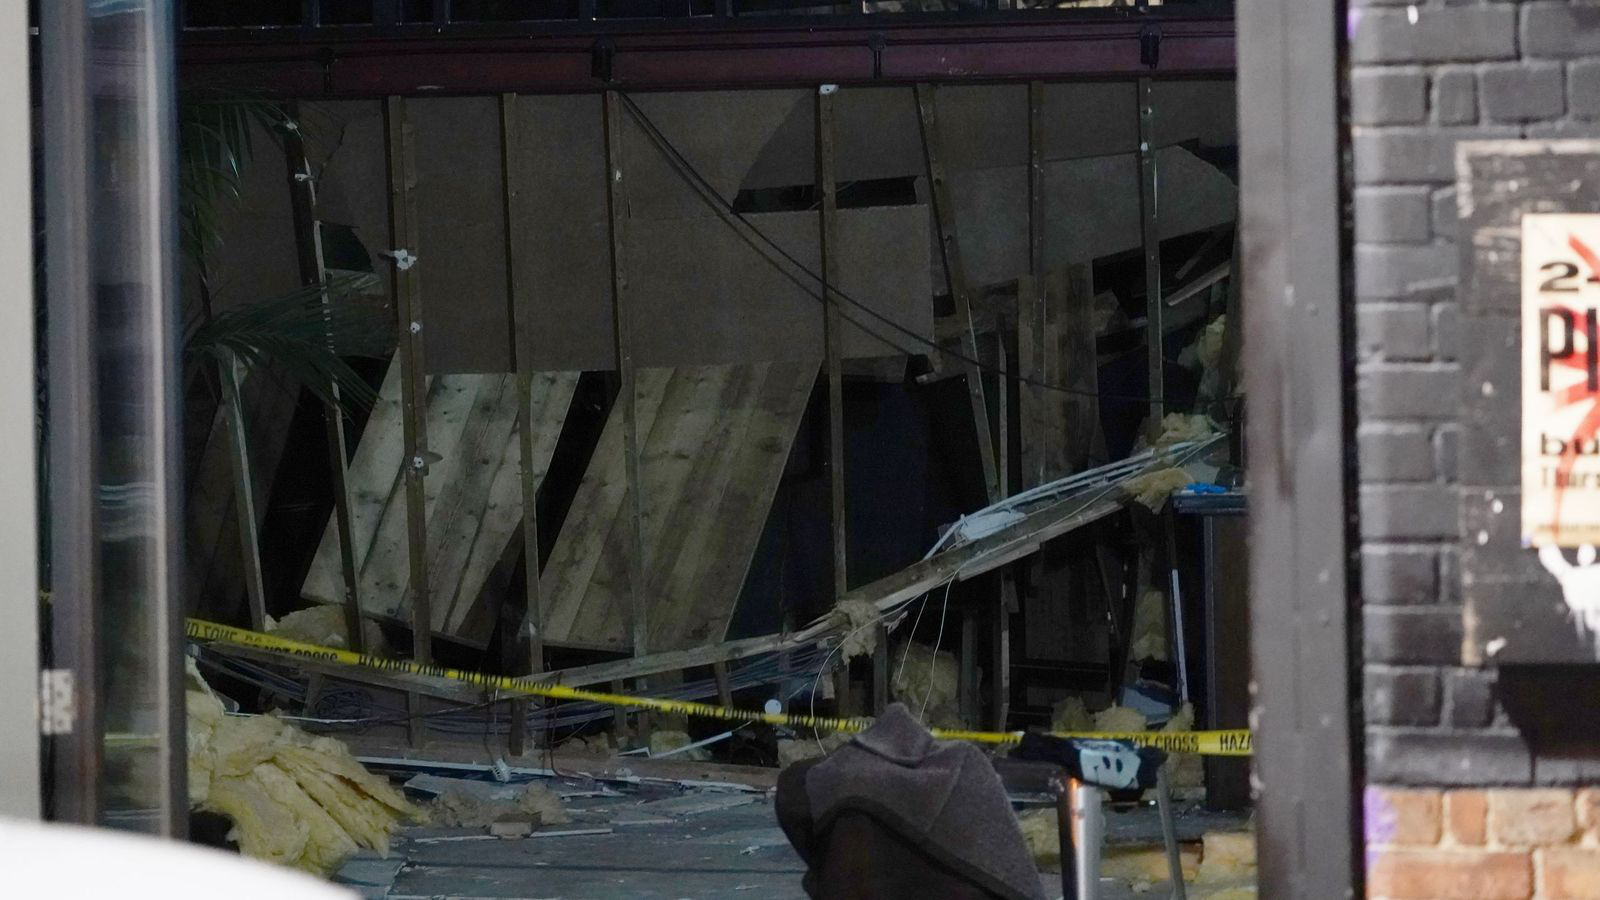 Sàn gác lửng bị sập tại quán bar ở London, 13 người bị thương - Ảnh 2.